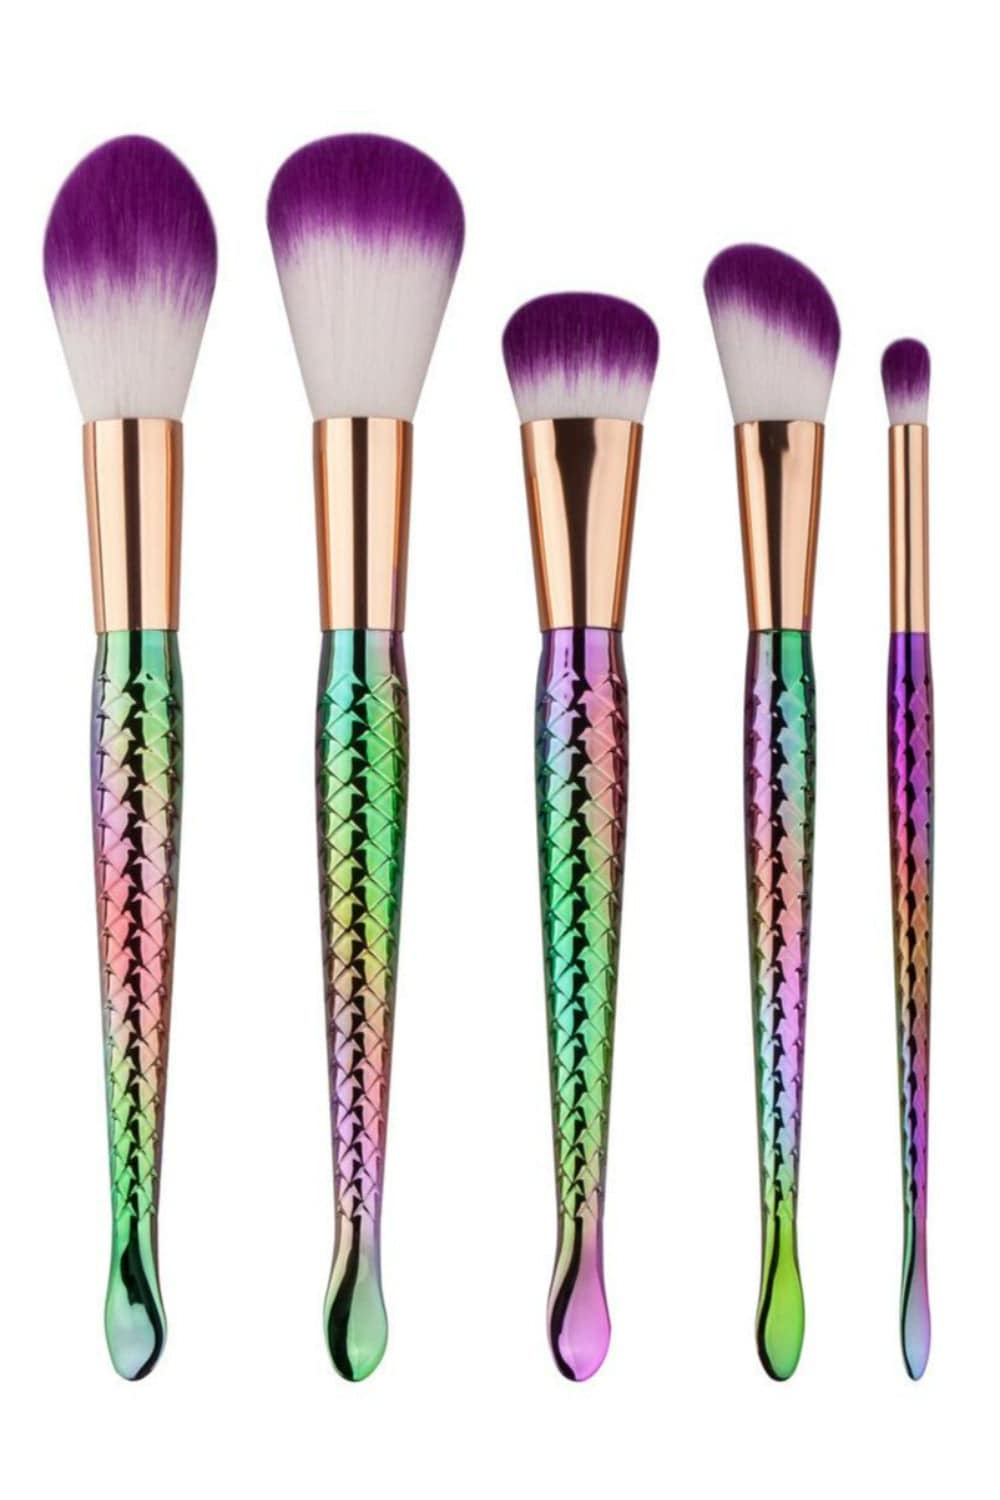 Mermaid Multicolor Makeup Brushes Set - 5 Pcs - TGC Boutique - Makeup Brush Set